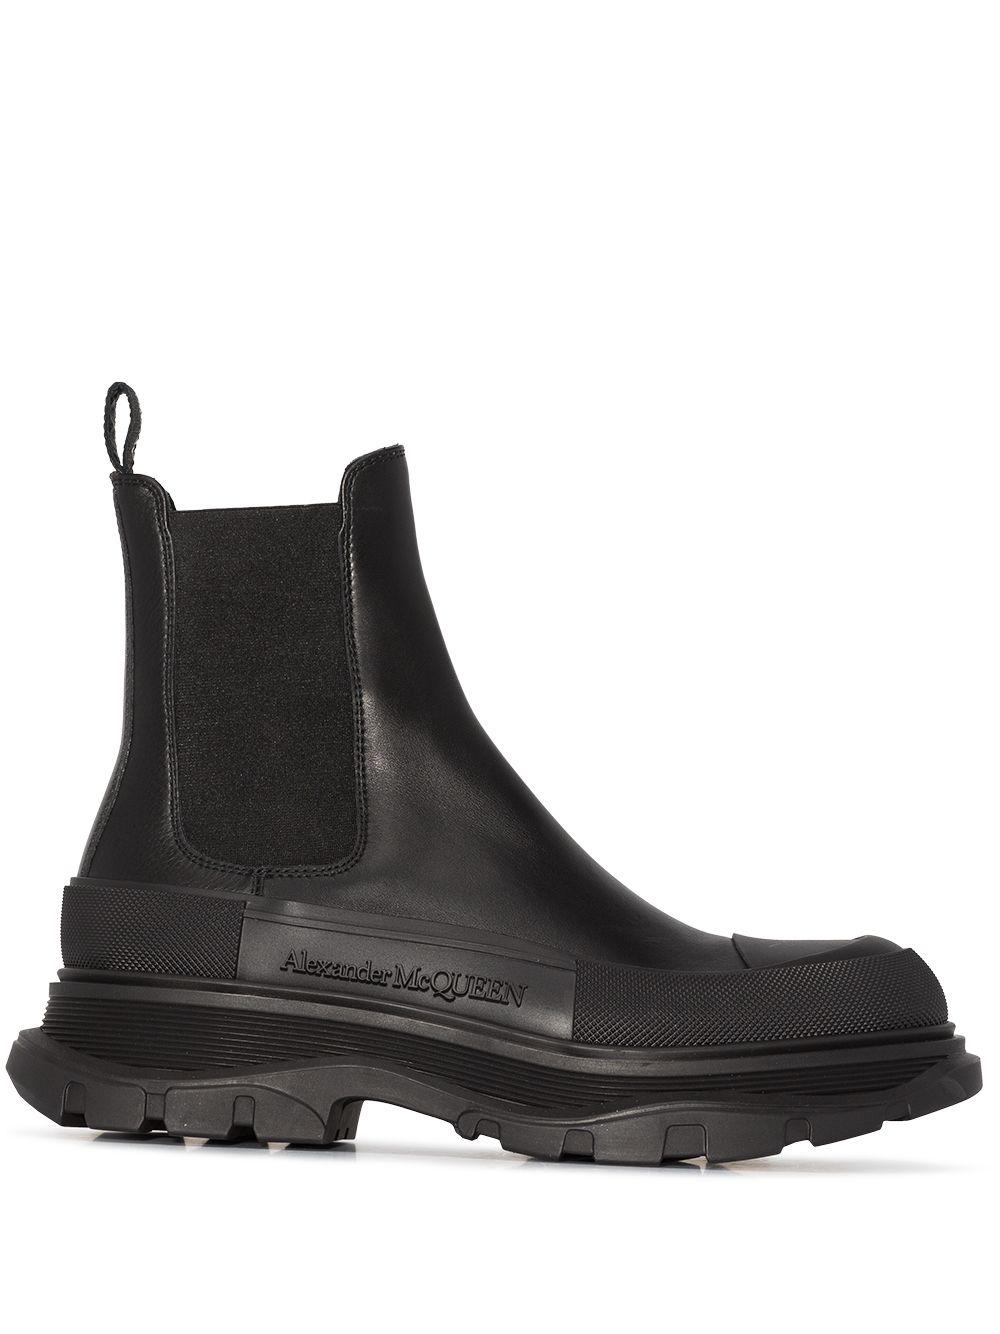 Alexander McQueen Tread Slick Chelsea Boots in Black - Save 47 